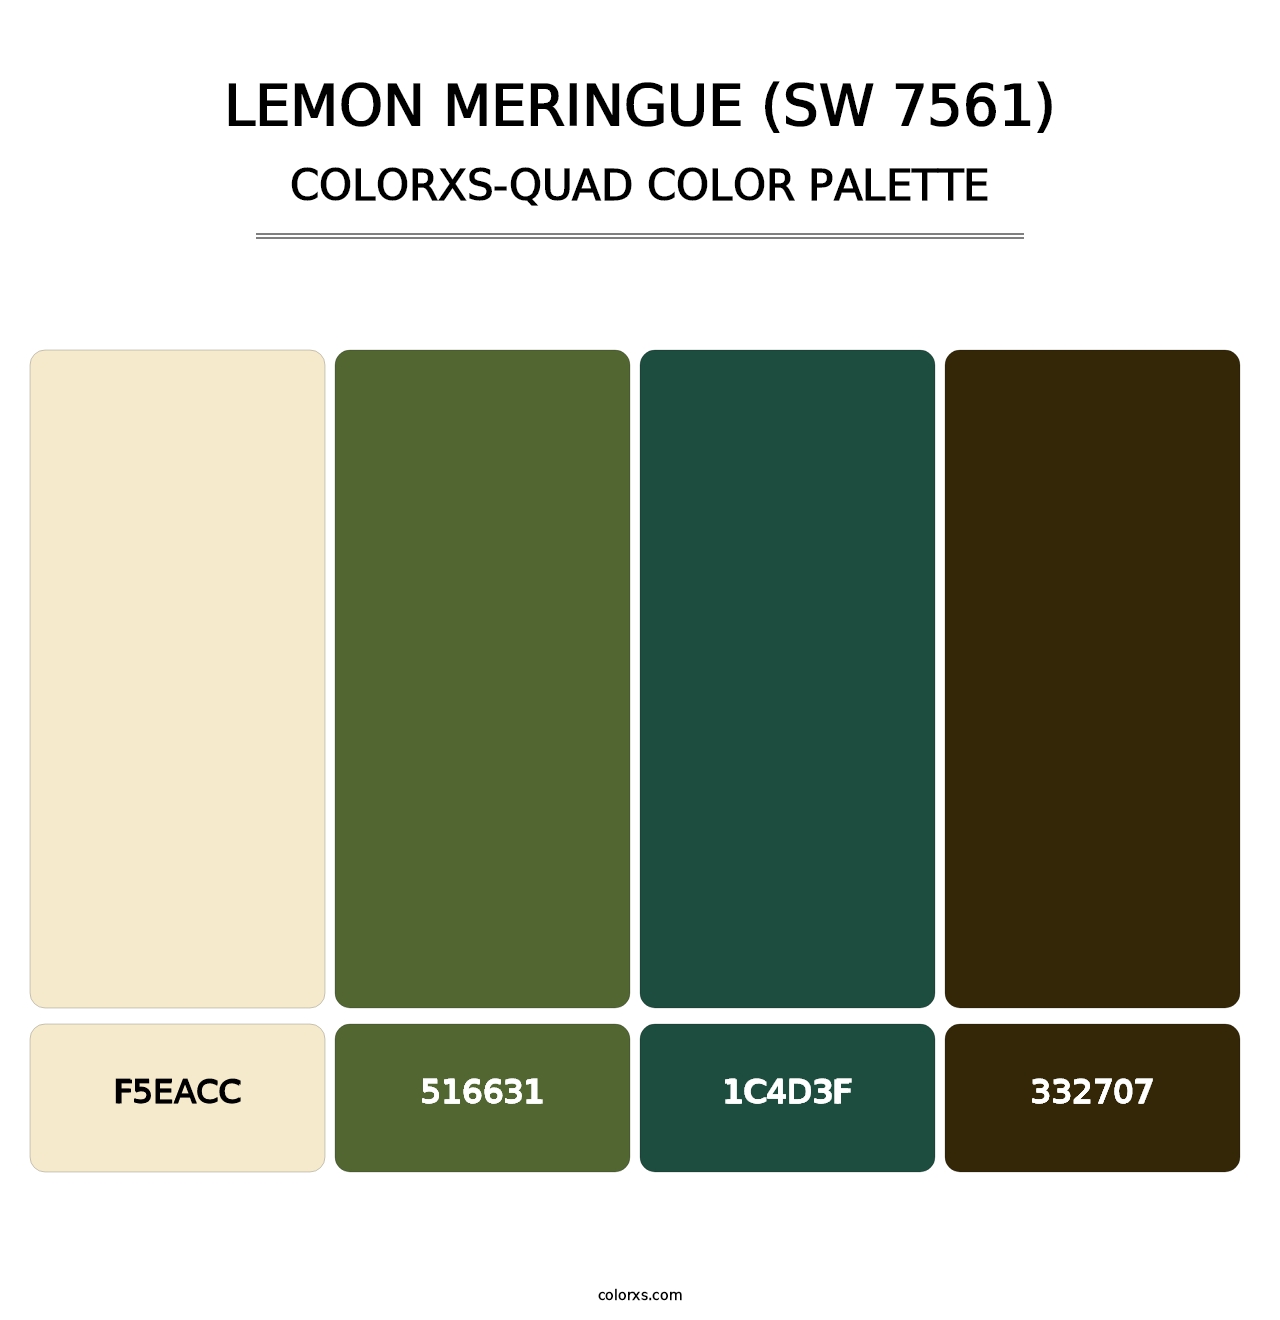 Lemon Meringue (SW 7561) - Colorxs Quad Palette